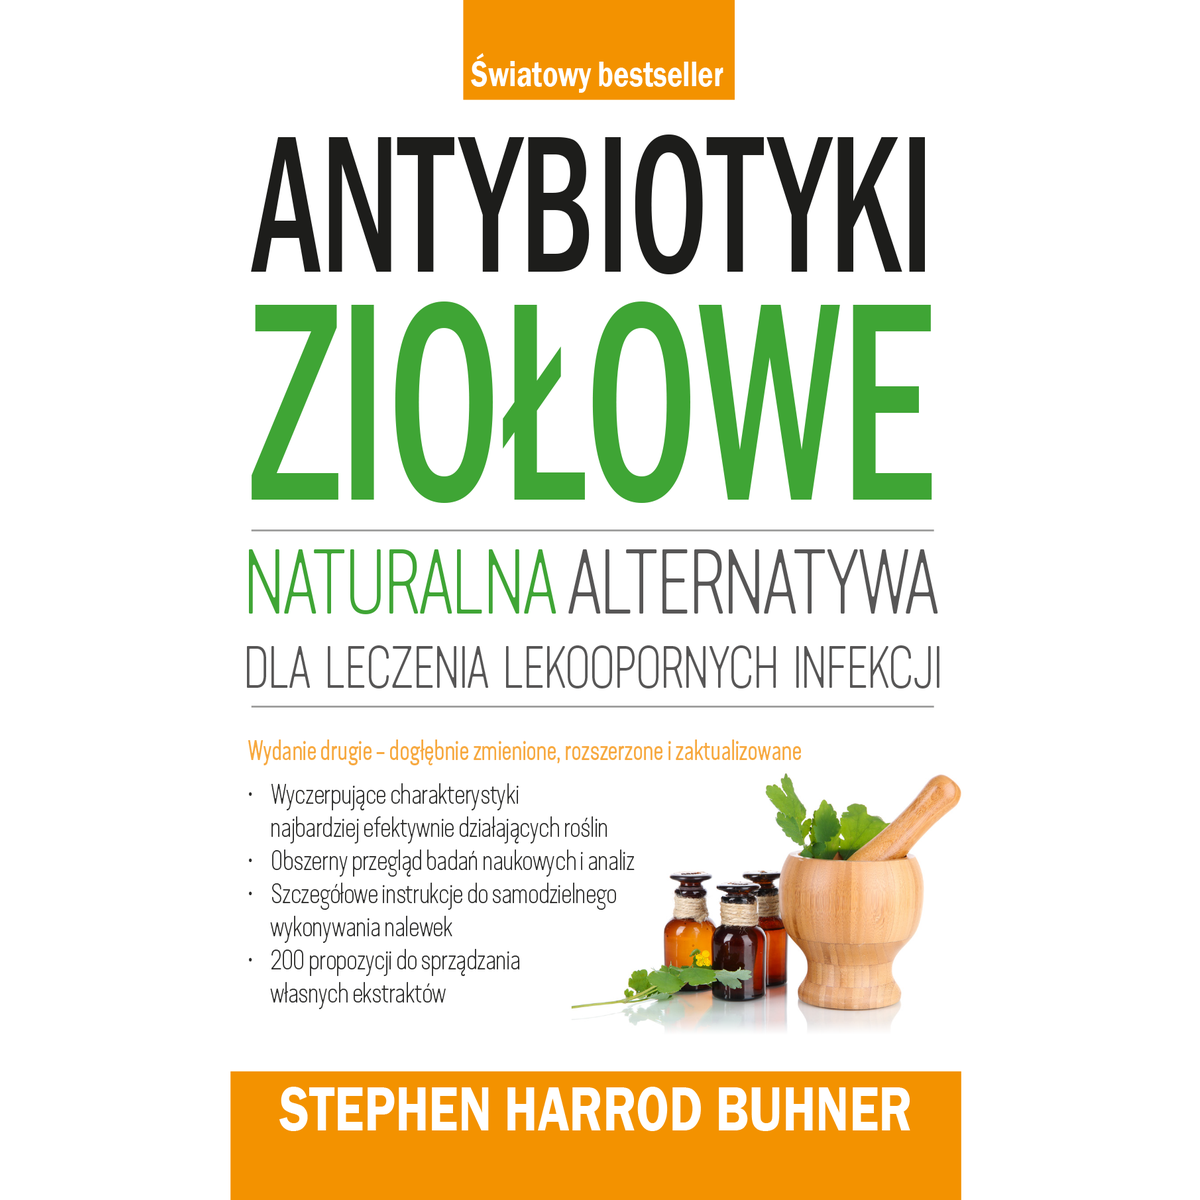 Antybiotyki ziołowe Buhner S.H.